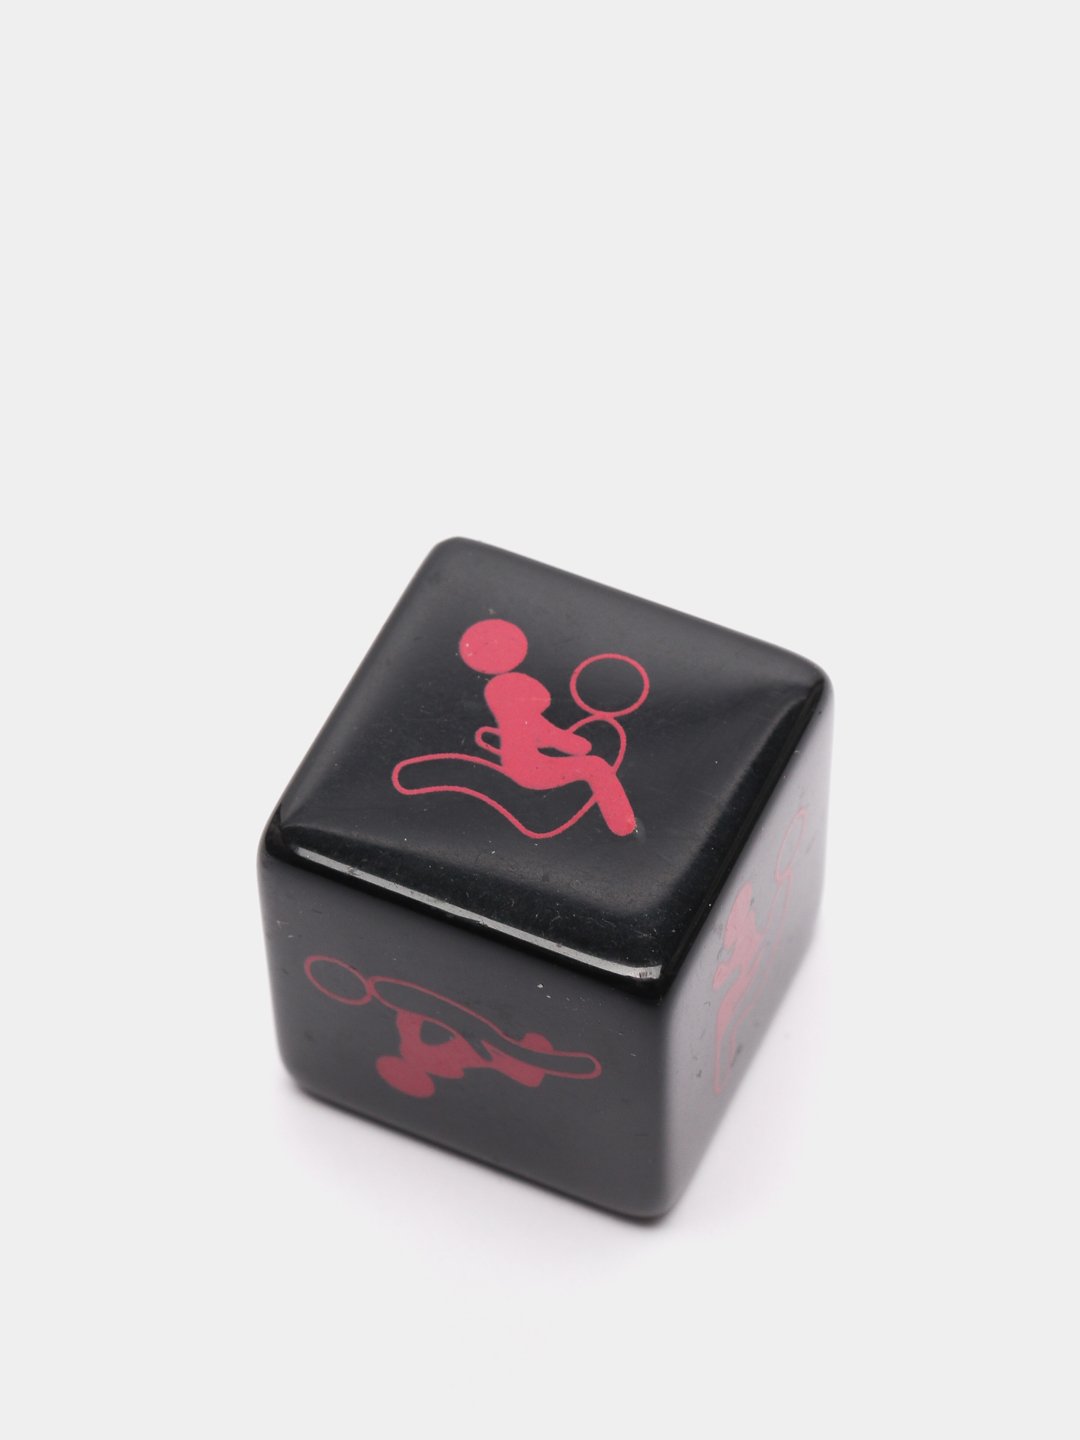 Эротические кубики (2 шт.) (Эврика) купить по цене руб. в интернет-магазине Мистер Гик